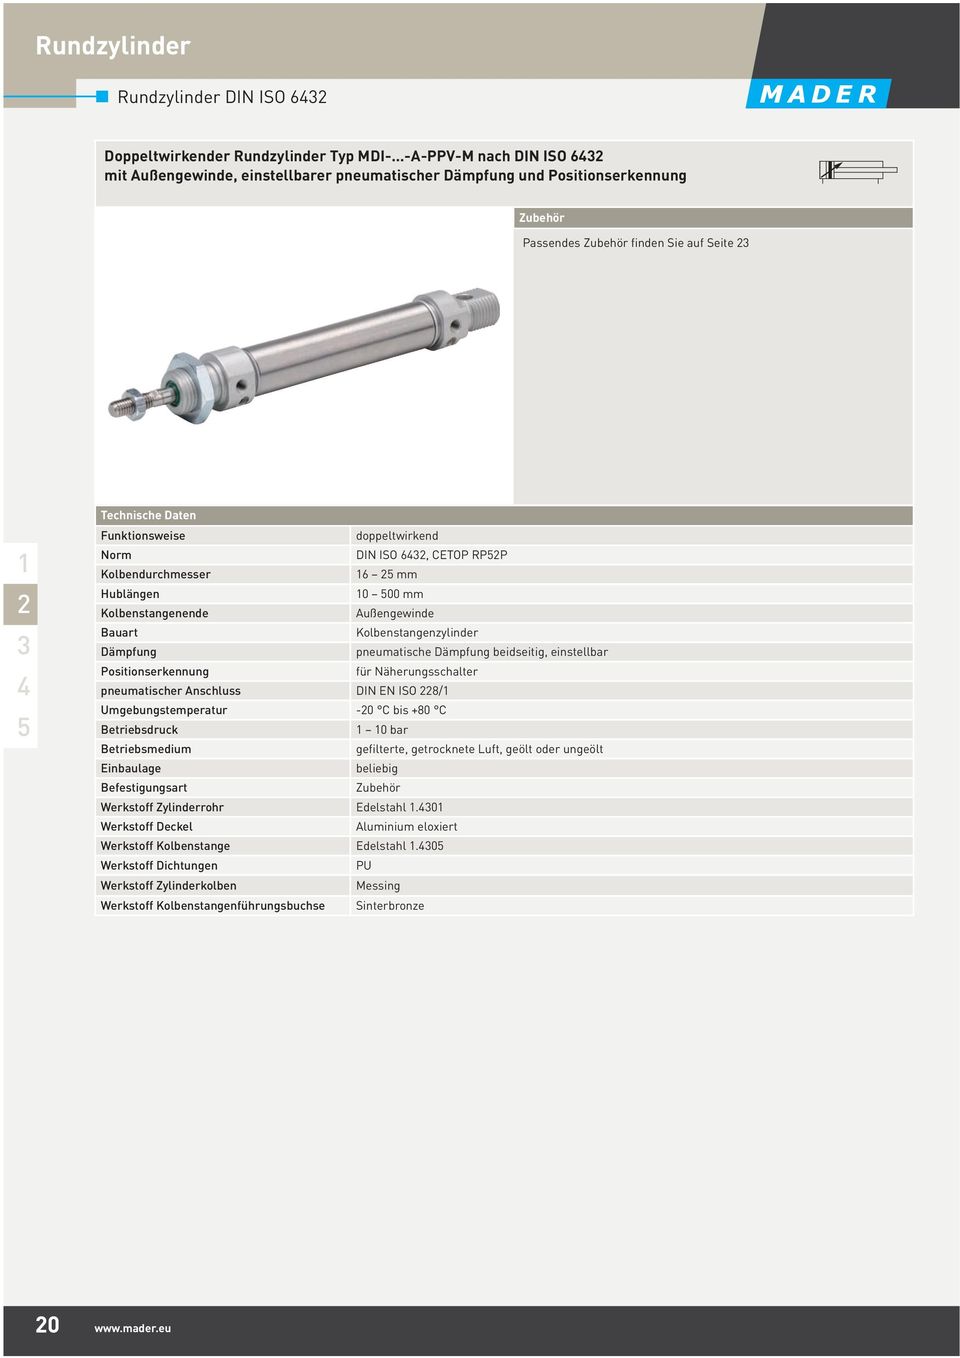 Norm DIN ISO 6, CETOP RPP Kolbendurchmesser 6 mm Hublängen 0 00 mm Kolbenstangenende Außengewinde Bauart Kolbenstangenzylinder Dämpfung pneumatische Dämpfung beidseitig, einstellbar